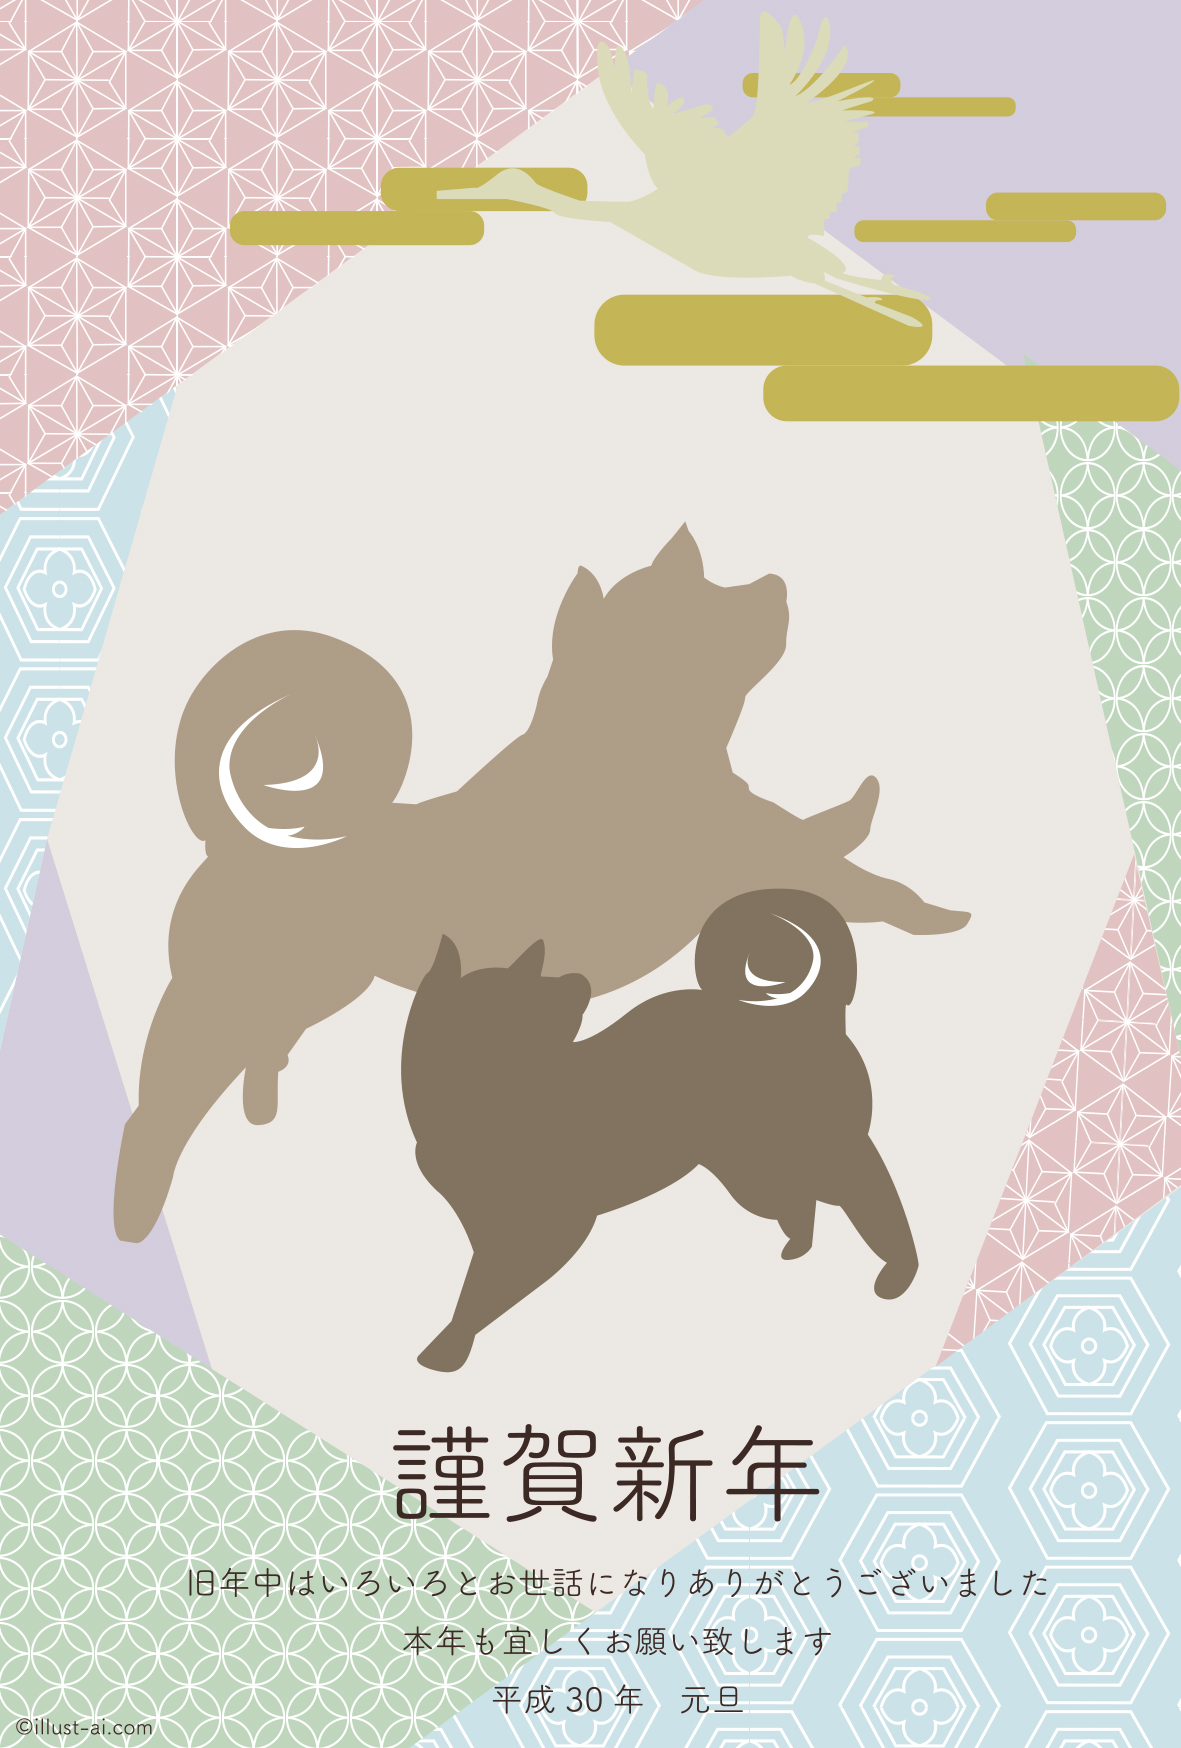 年賀状 戌年 2匹の犬が鶴を見上げるシルエット 年賀状18無料イラスト素材集